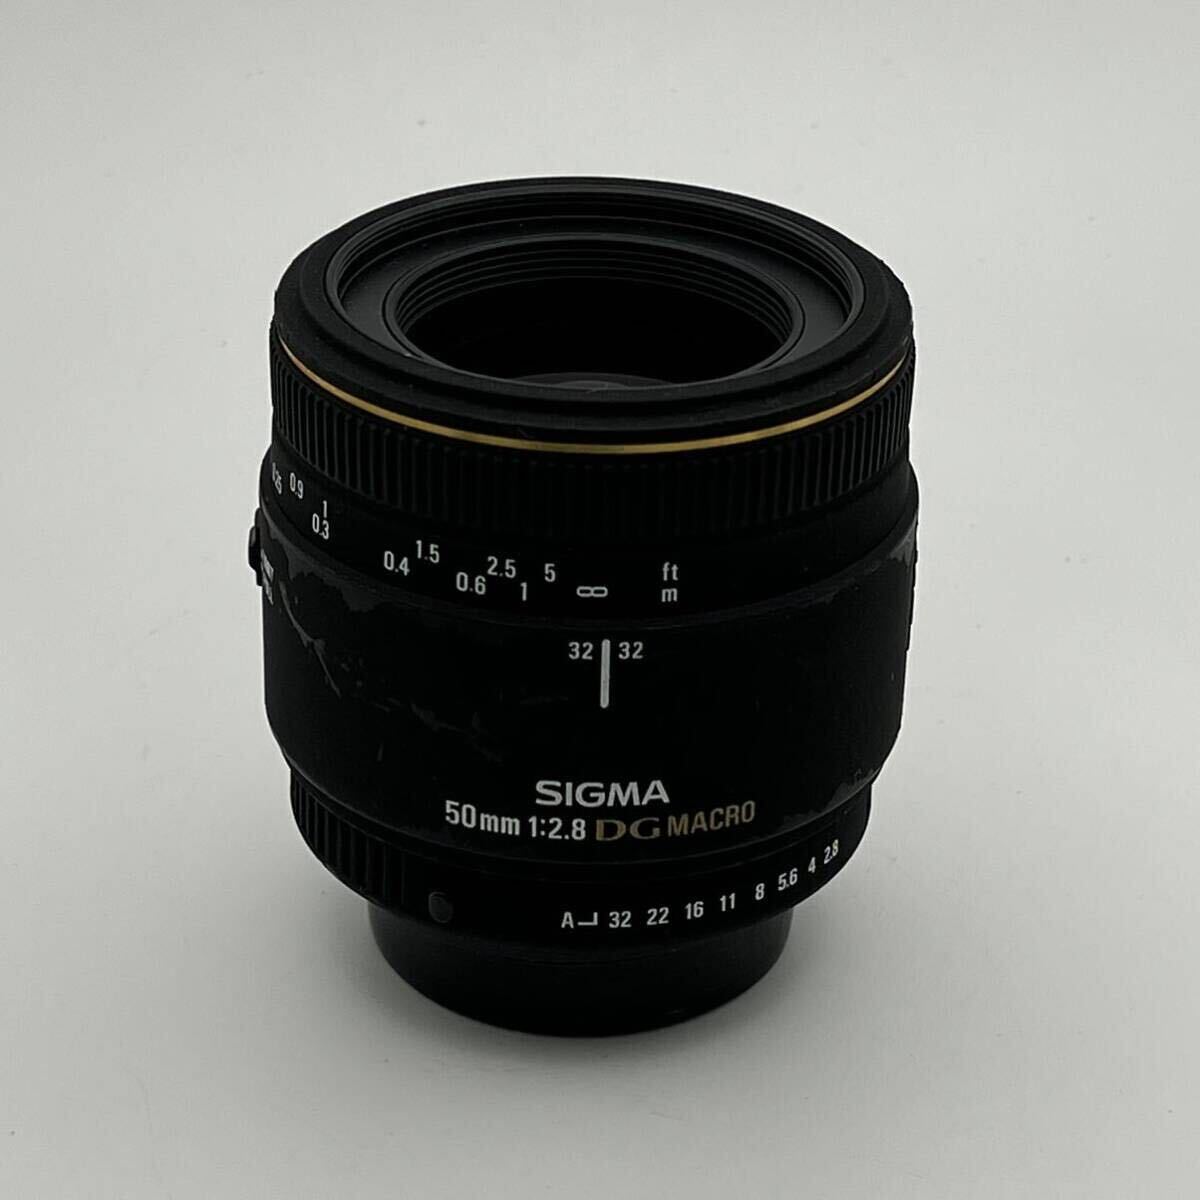 SIGMA MACRO 50mm F2.8 EX DG シグマ マクロ PENTAX ペンタックス Kマウント フルサイズ対応 標準マクロレンズの画像1